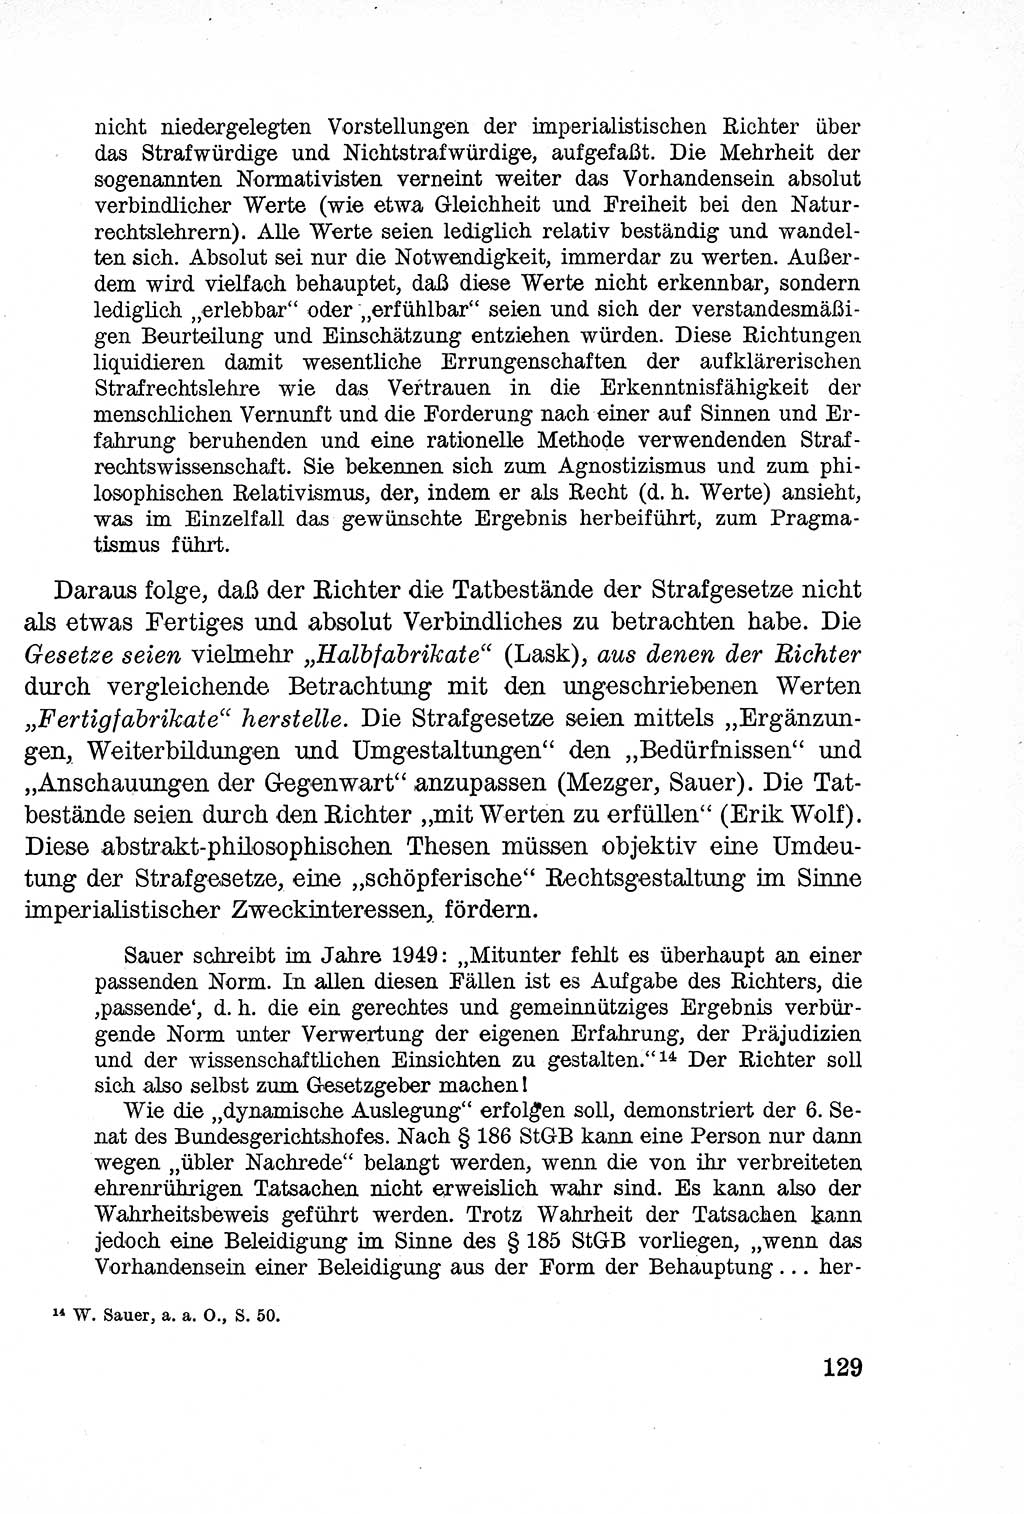 Lehrbuch des Strafrechts der Deutschen Demokratischen Republik (DDR), Allgemeiner Teil 1957, Seite 129 (Lb. Strafr. DDR AT 1957, S. 129)